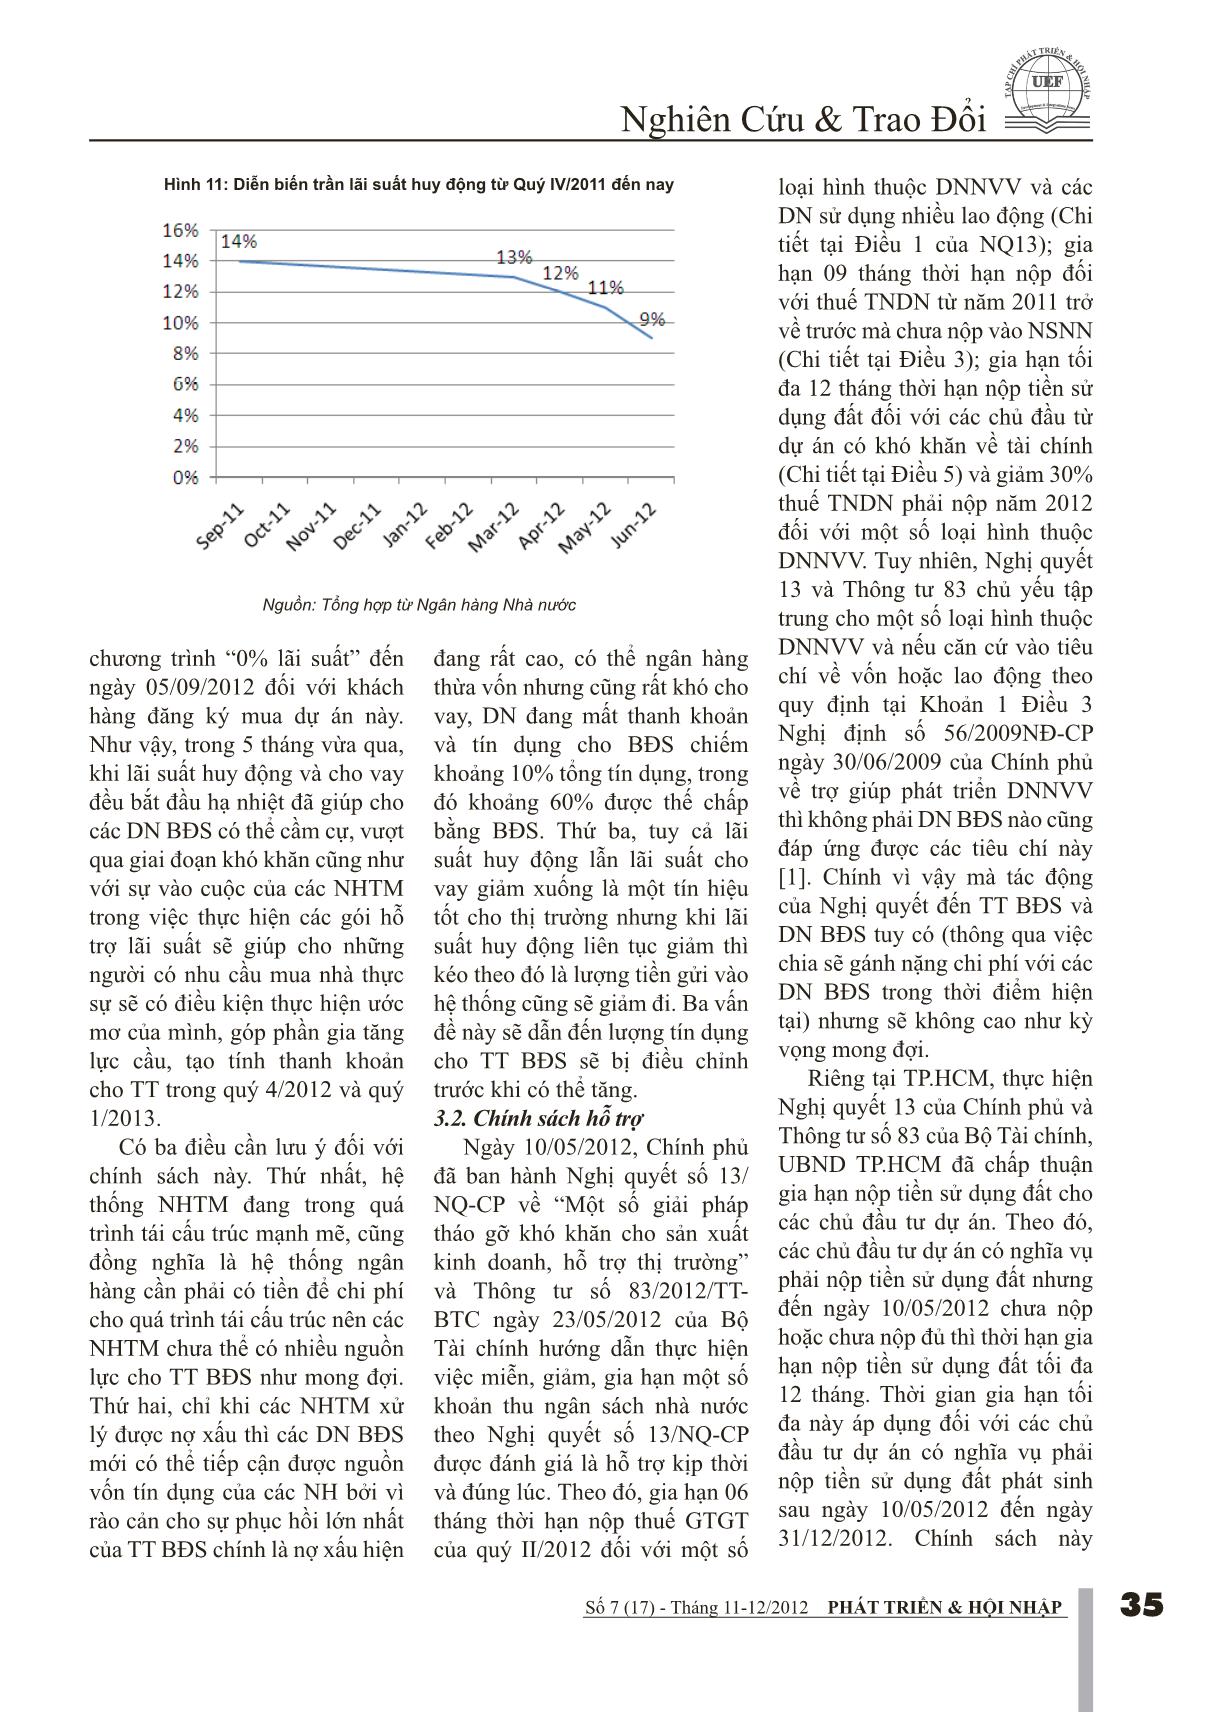 Tác động của chính sách vĩ mô 9 tháng đầu năm lên giá căn hộ Quý IV/2012 trang 5